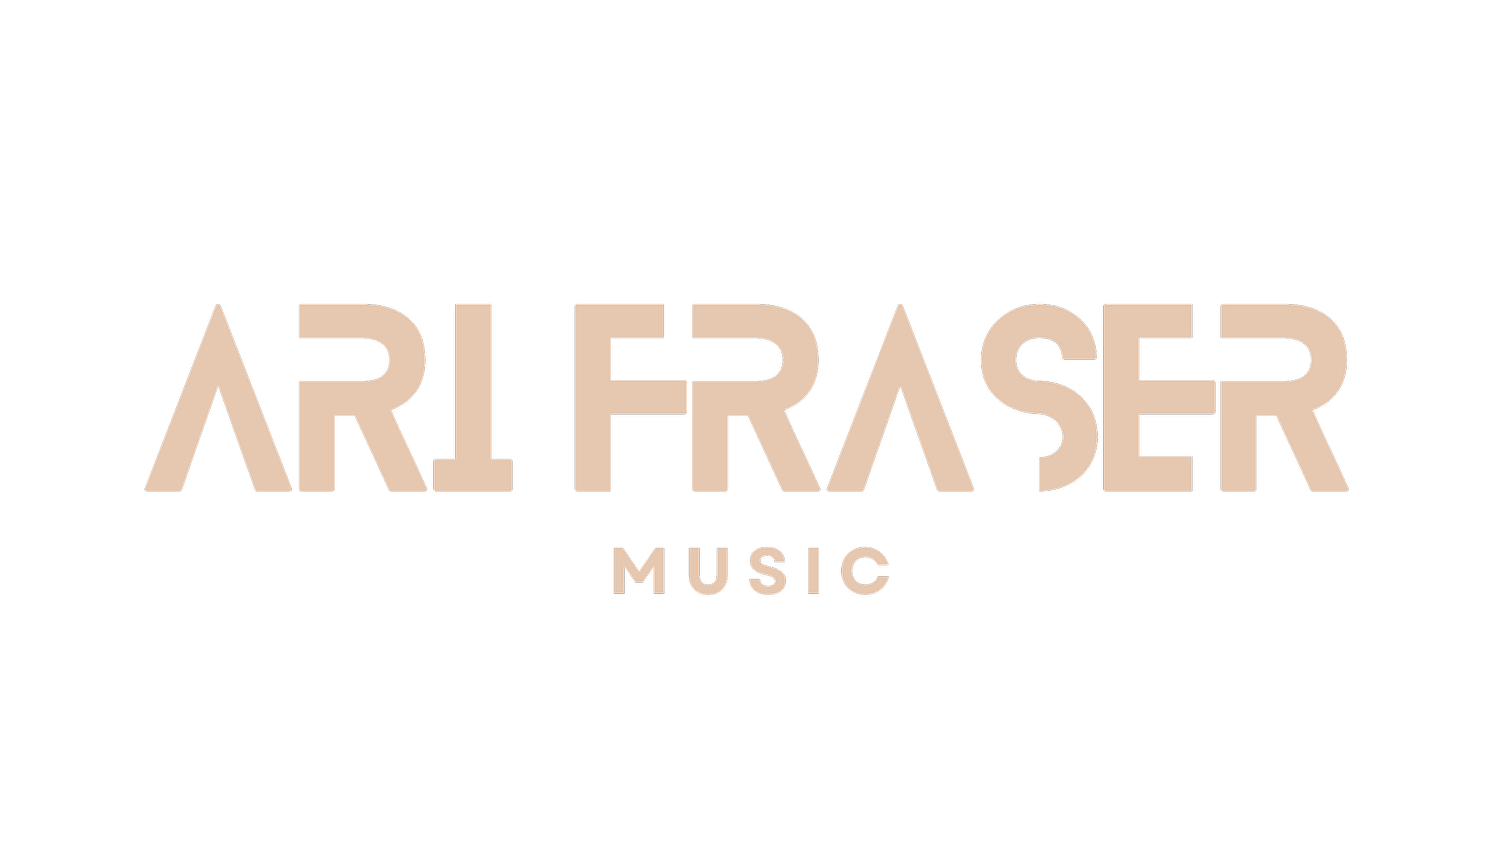 Ari Fraser Music